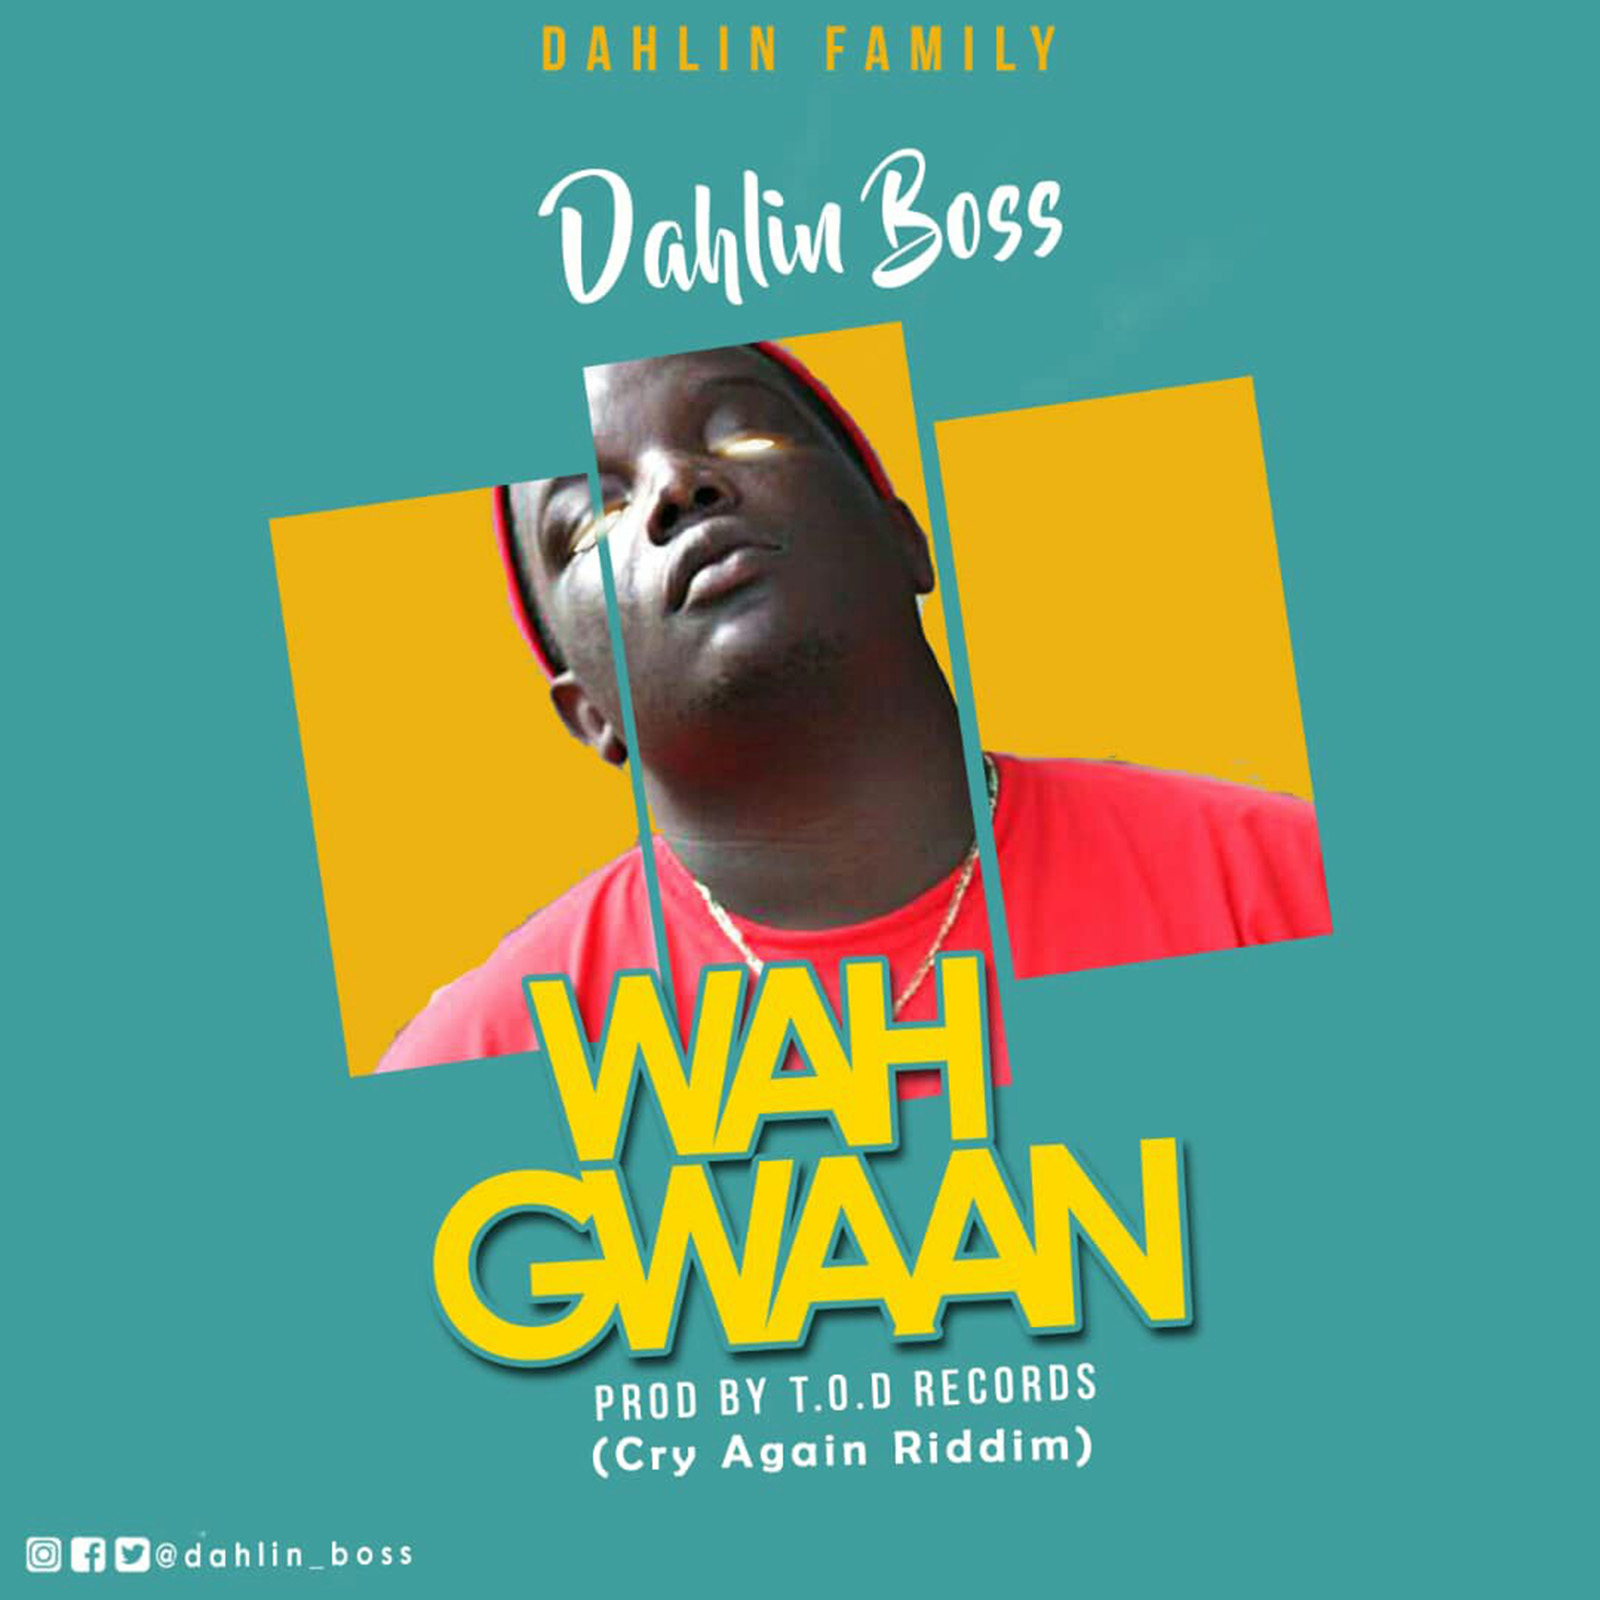 Wah Gwaan by Dahlin Boss